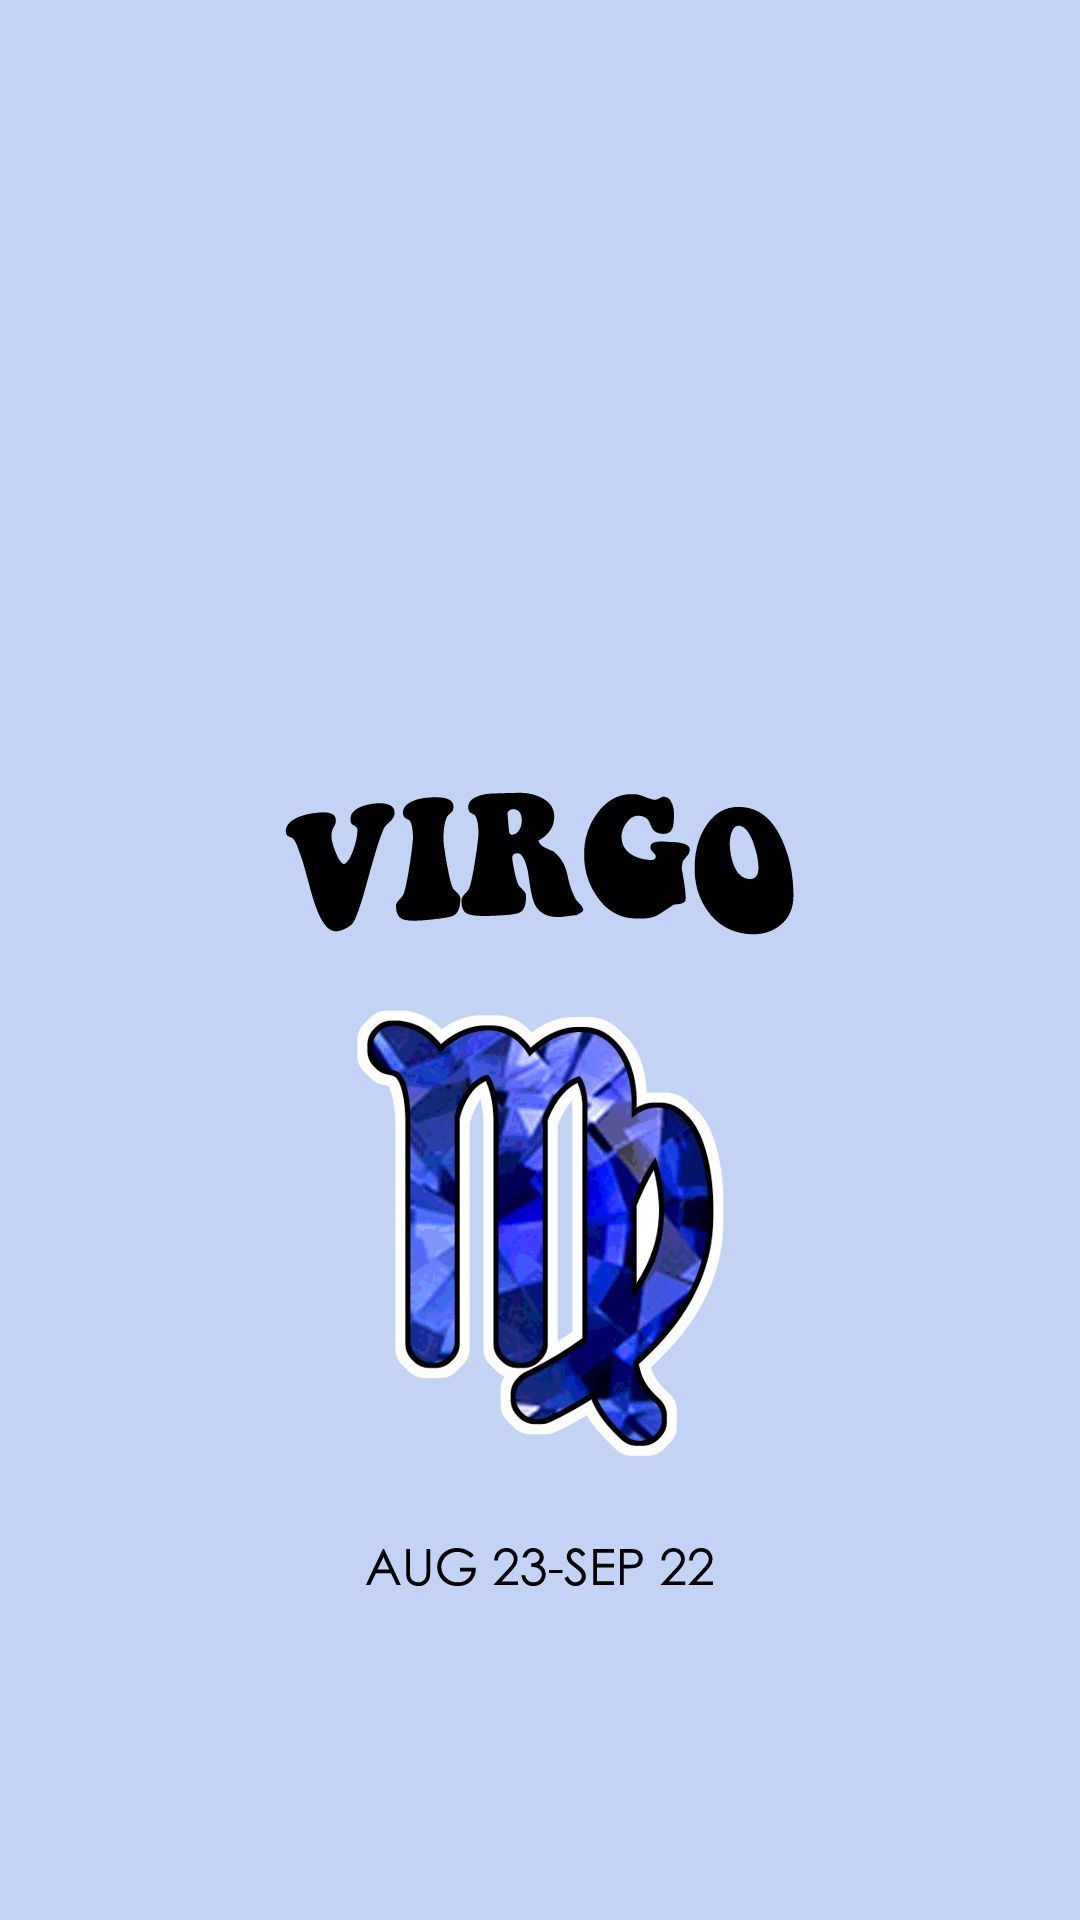 Virgo zodiac sign wallpaper - Virgo